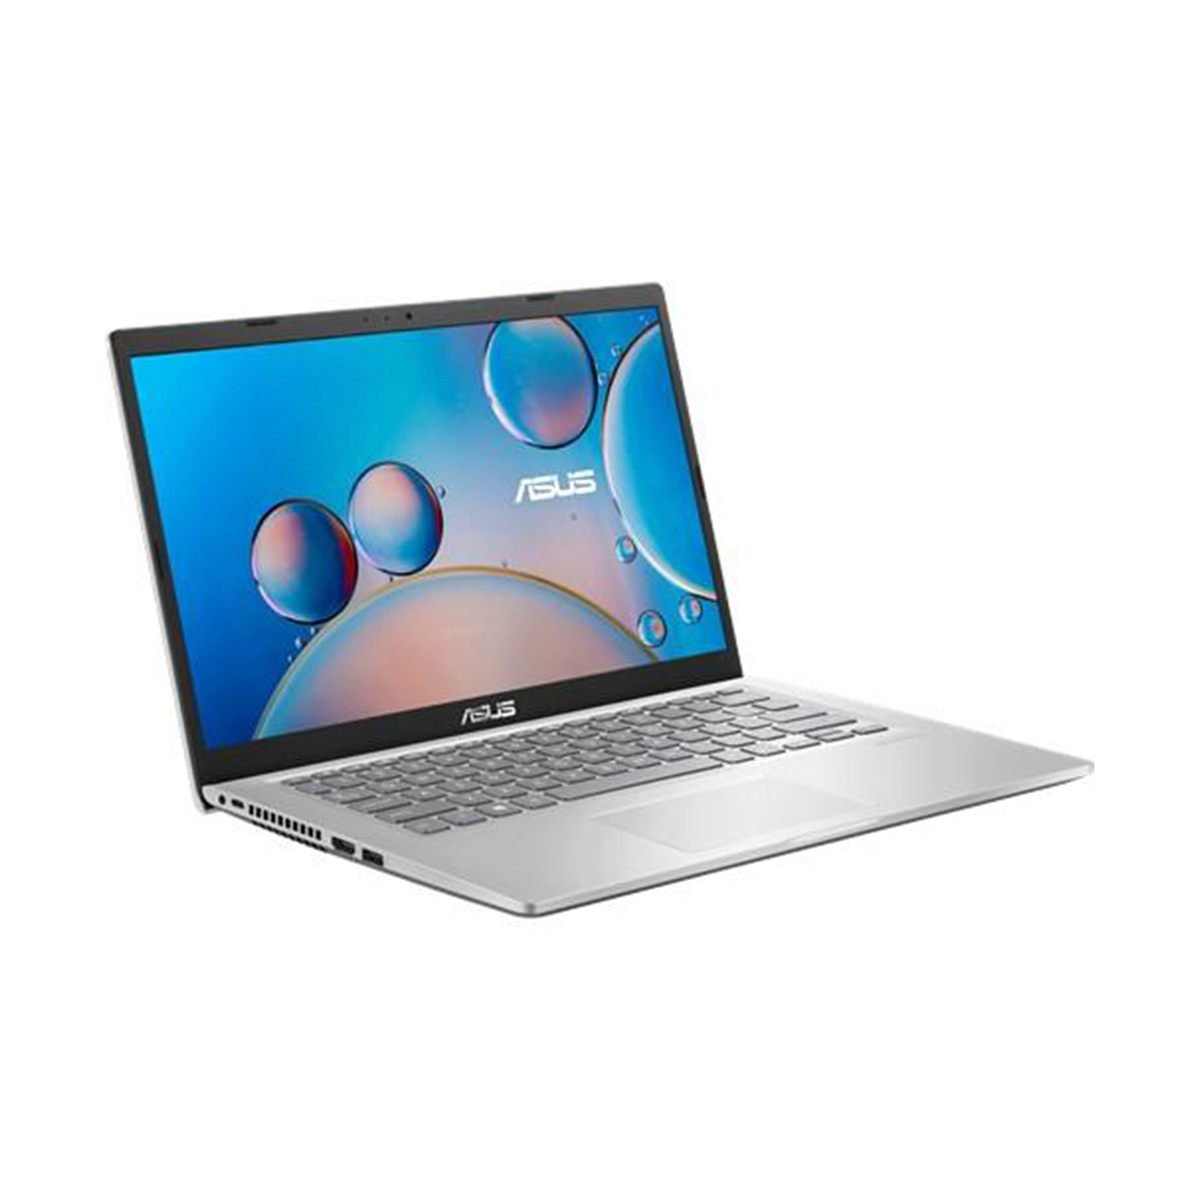 Asus Notebook X415JA-EK364T,Intel Core i3,4GB RAM,512GB SSD,Intel HD Graphics,14.0" FHD,Windows 10,Silver